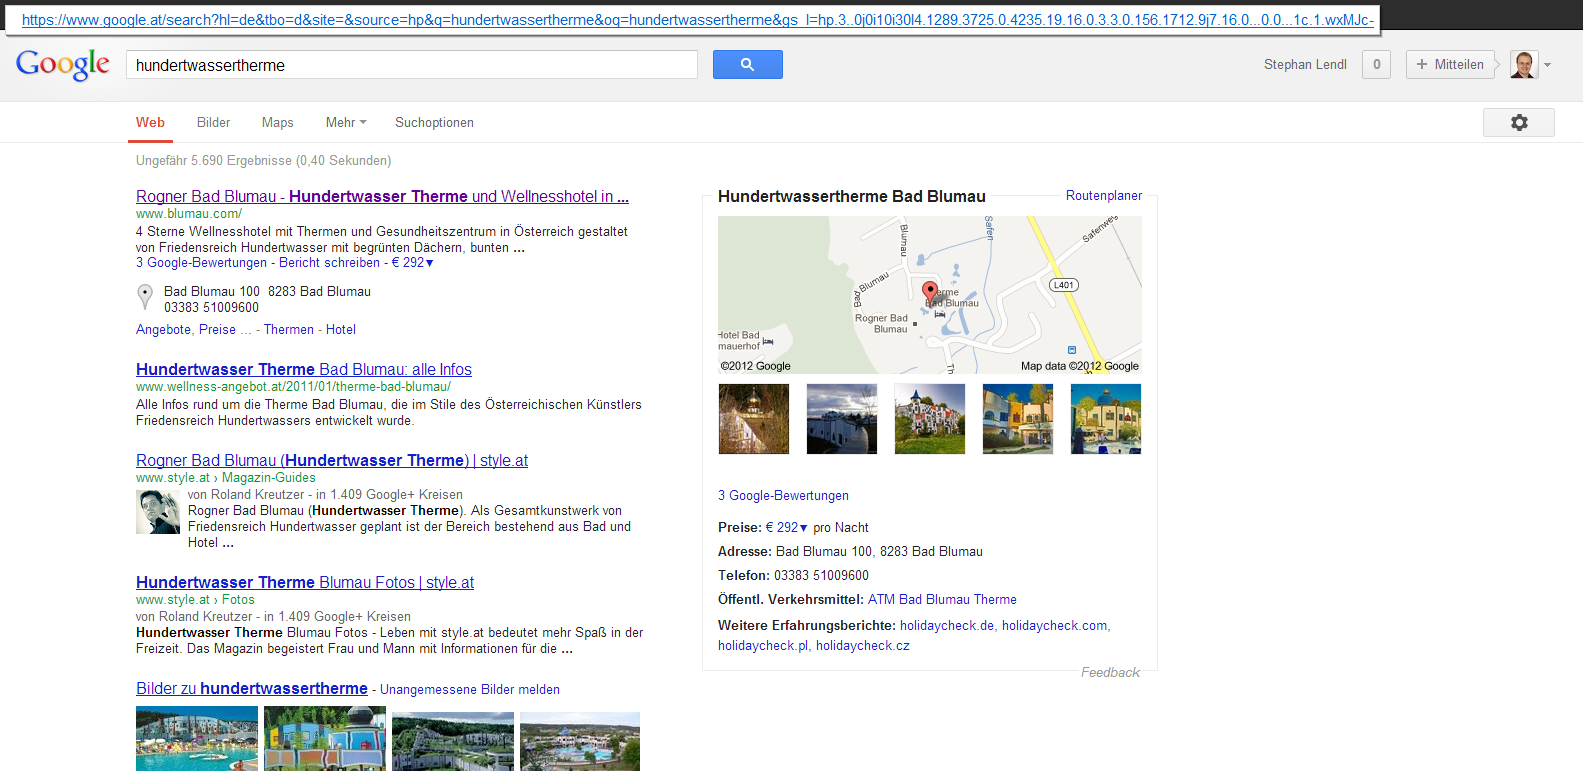 Screenshot www.google.at: Suche nach Hundertwassertherme - Google+ Local Einträge sehen überraschend ähnlich aus. Größter Unterschied auf den ersten Blick sind die Bewertungen und der optisch abweichende Feedback-Link.